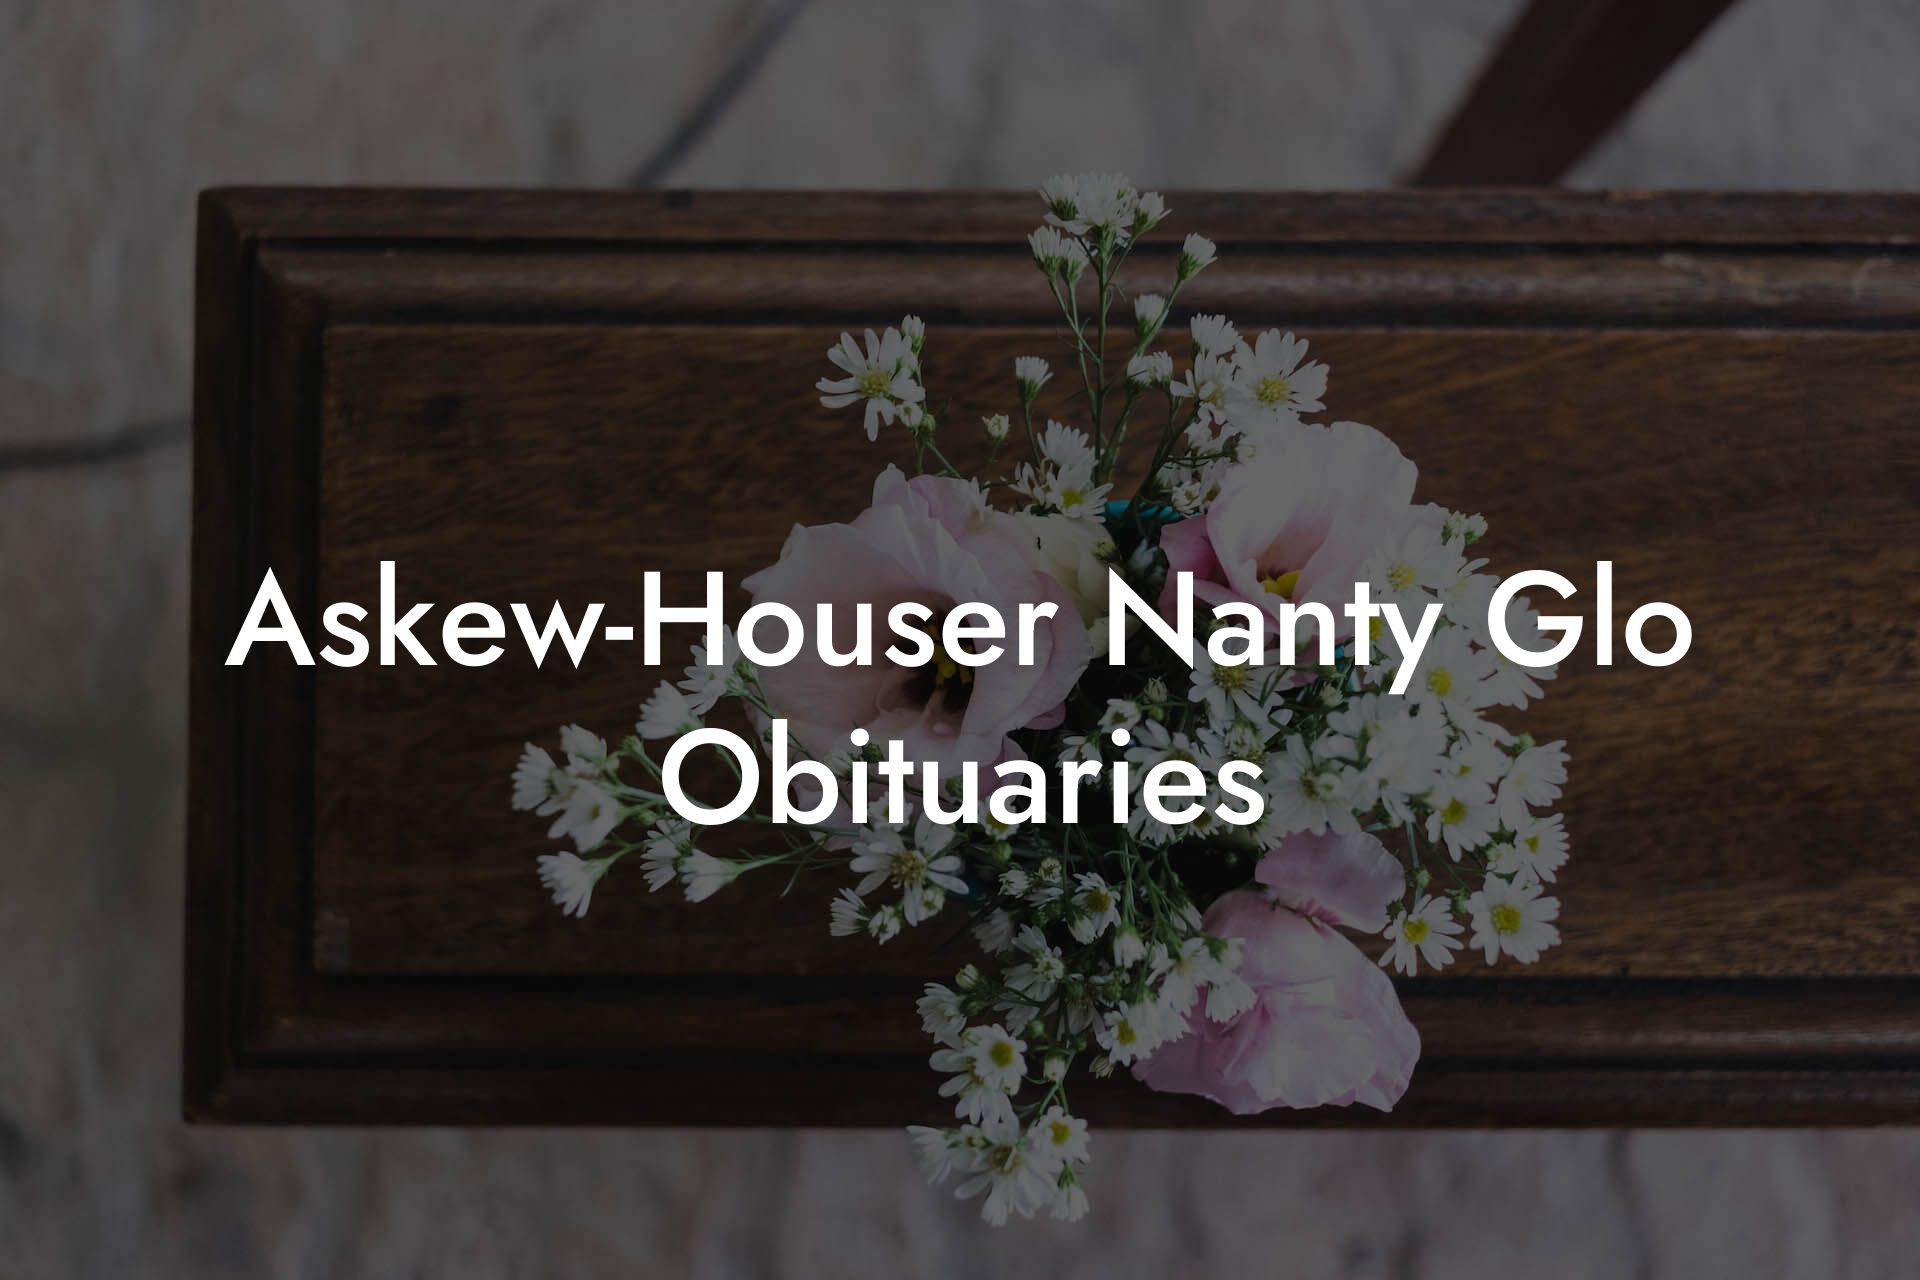 Askew-Houser Nanty Glo Obituaries